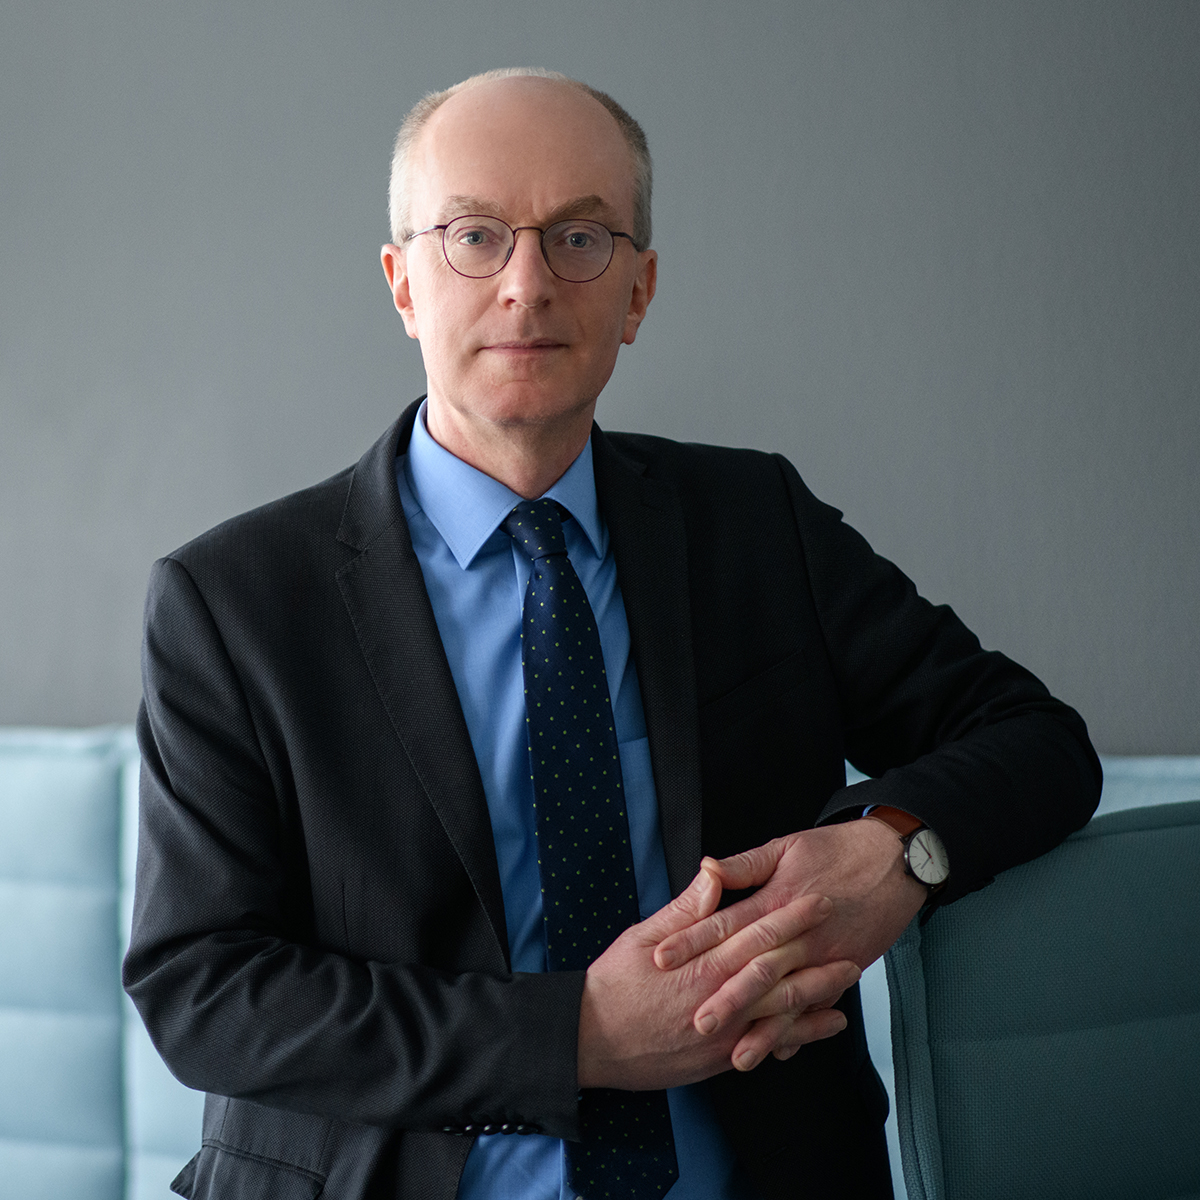 Portraitbild von Prof. Dr. Friedrich Heinemann sitzend auf einem hellblauen Sofa